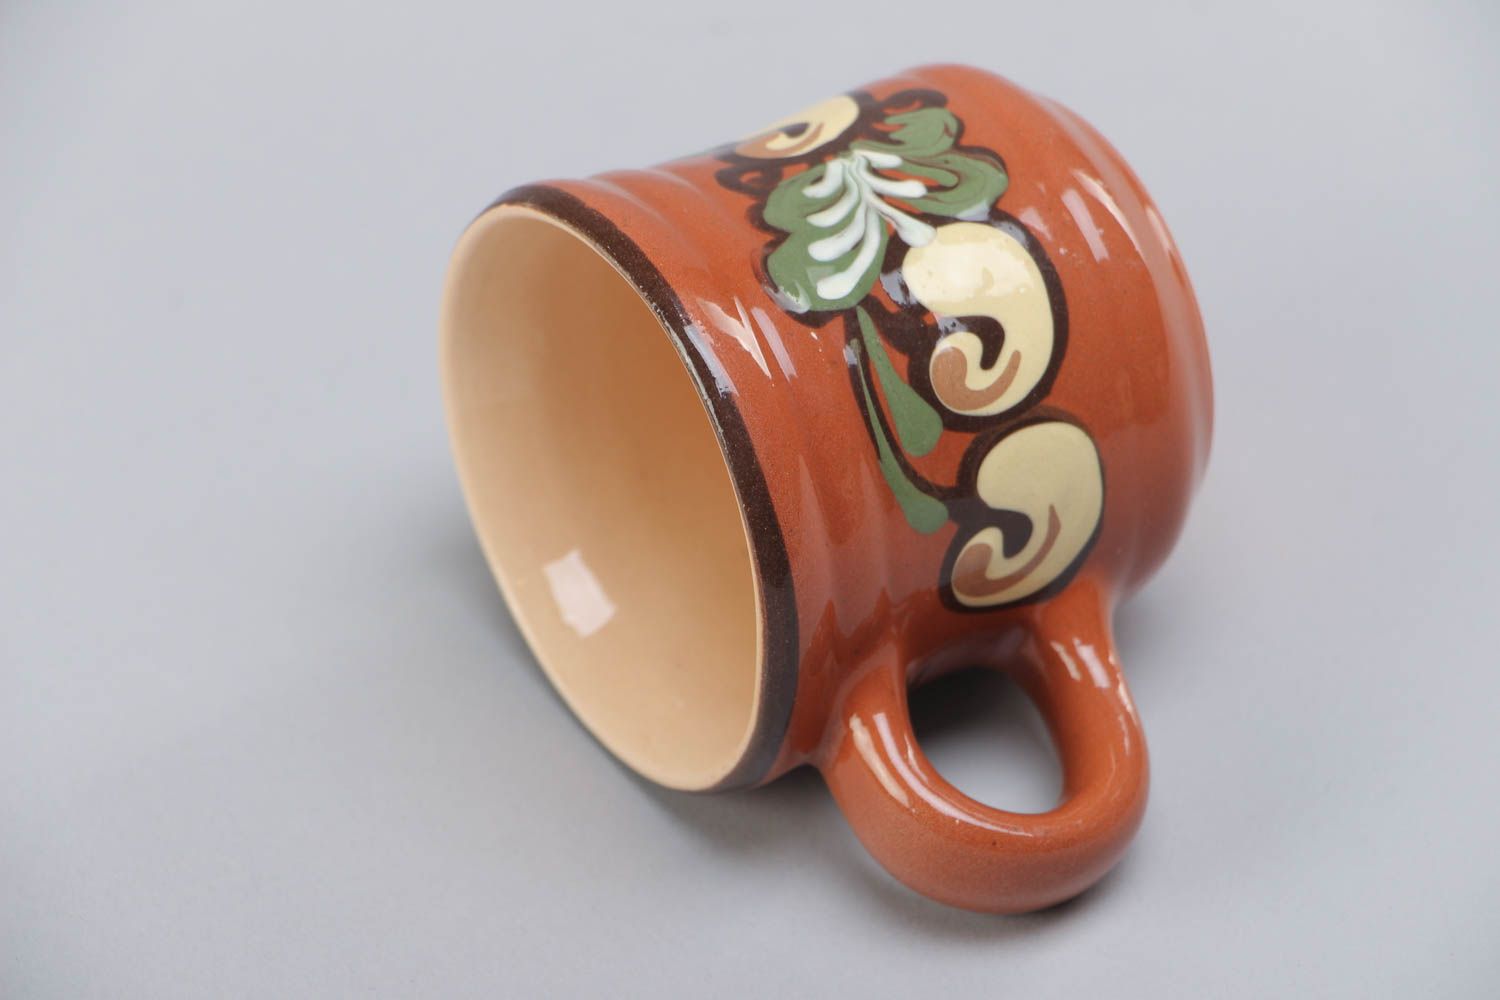 Petite tasse en céramique brun-vert peint aux motifs végétaux faite main 7 cl photo 4